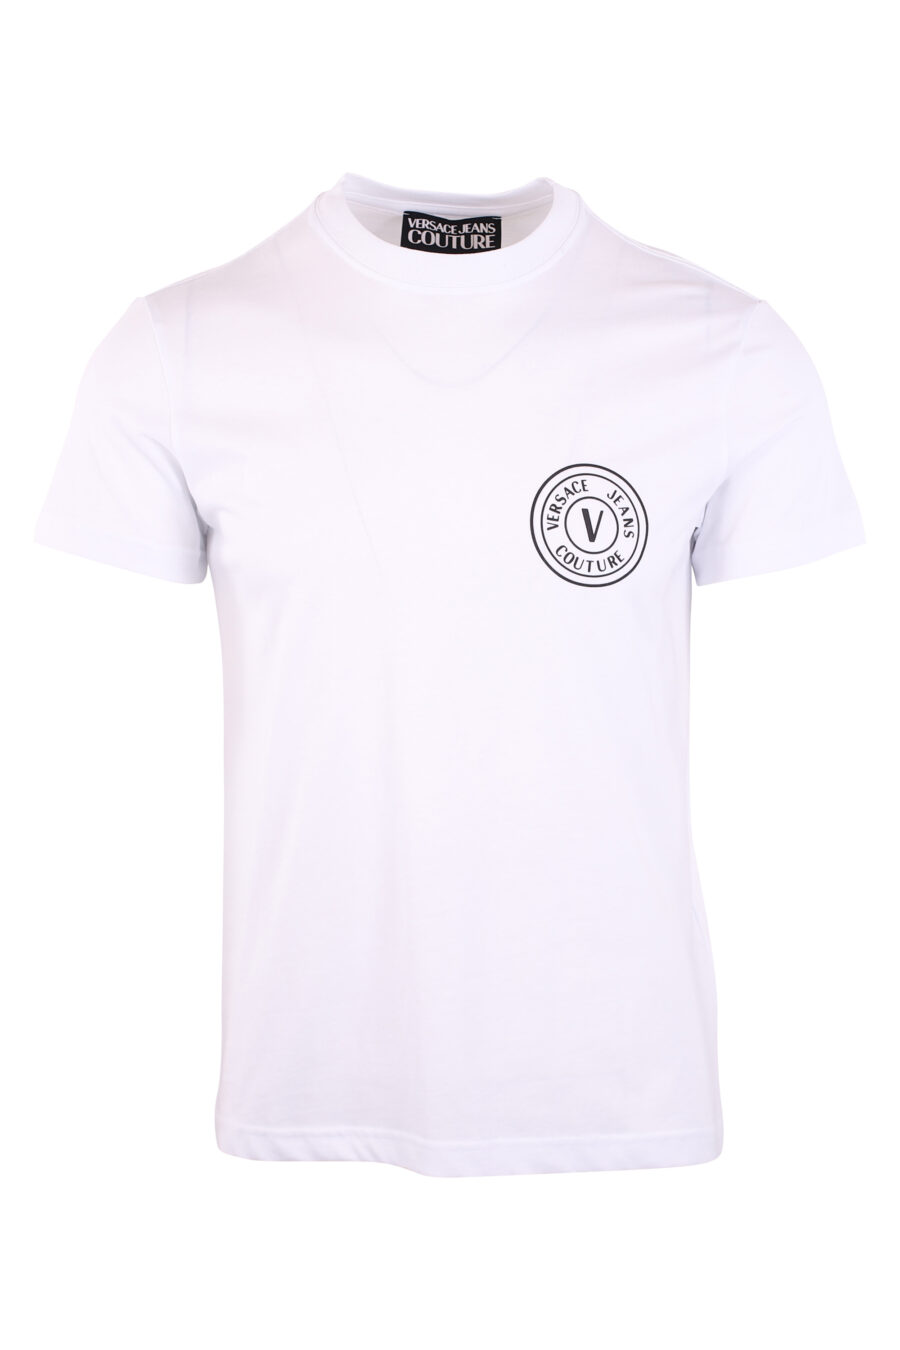 T-shirt weiß mit schwarzem runden Logo klein - IMG 3115